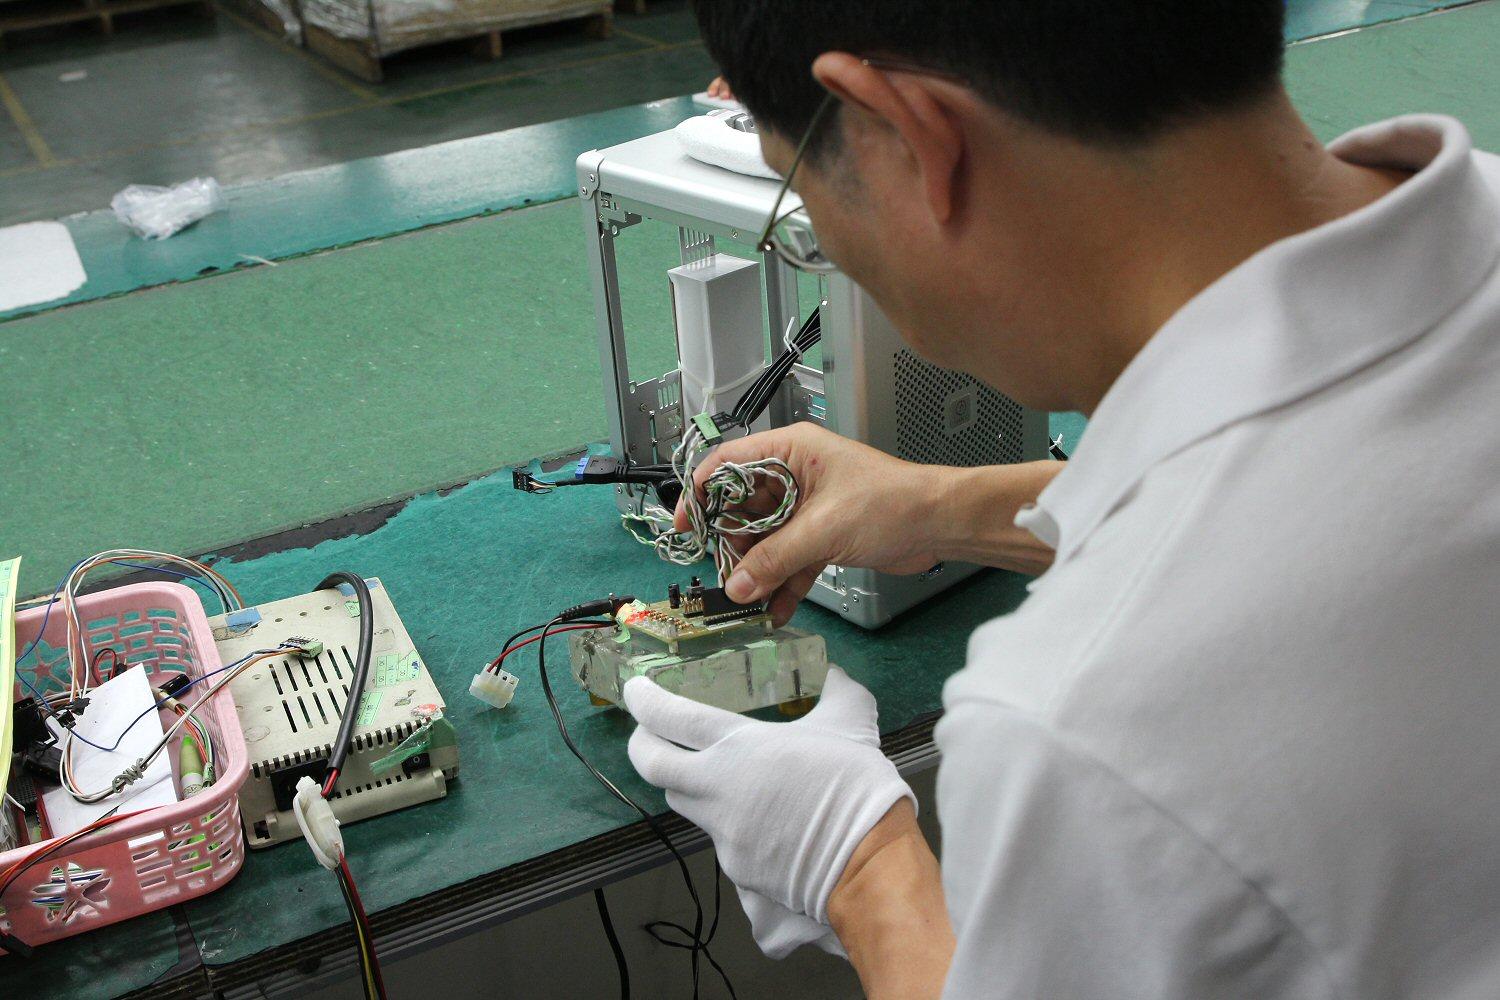 En tekniker sjekker at elektronikken er riktig installert og fungerer.Foto: Vegar Jansen, Hardware.no